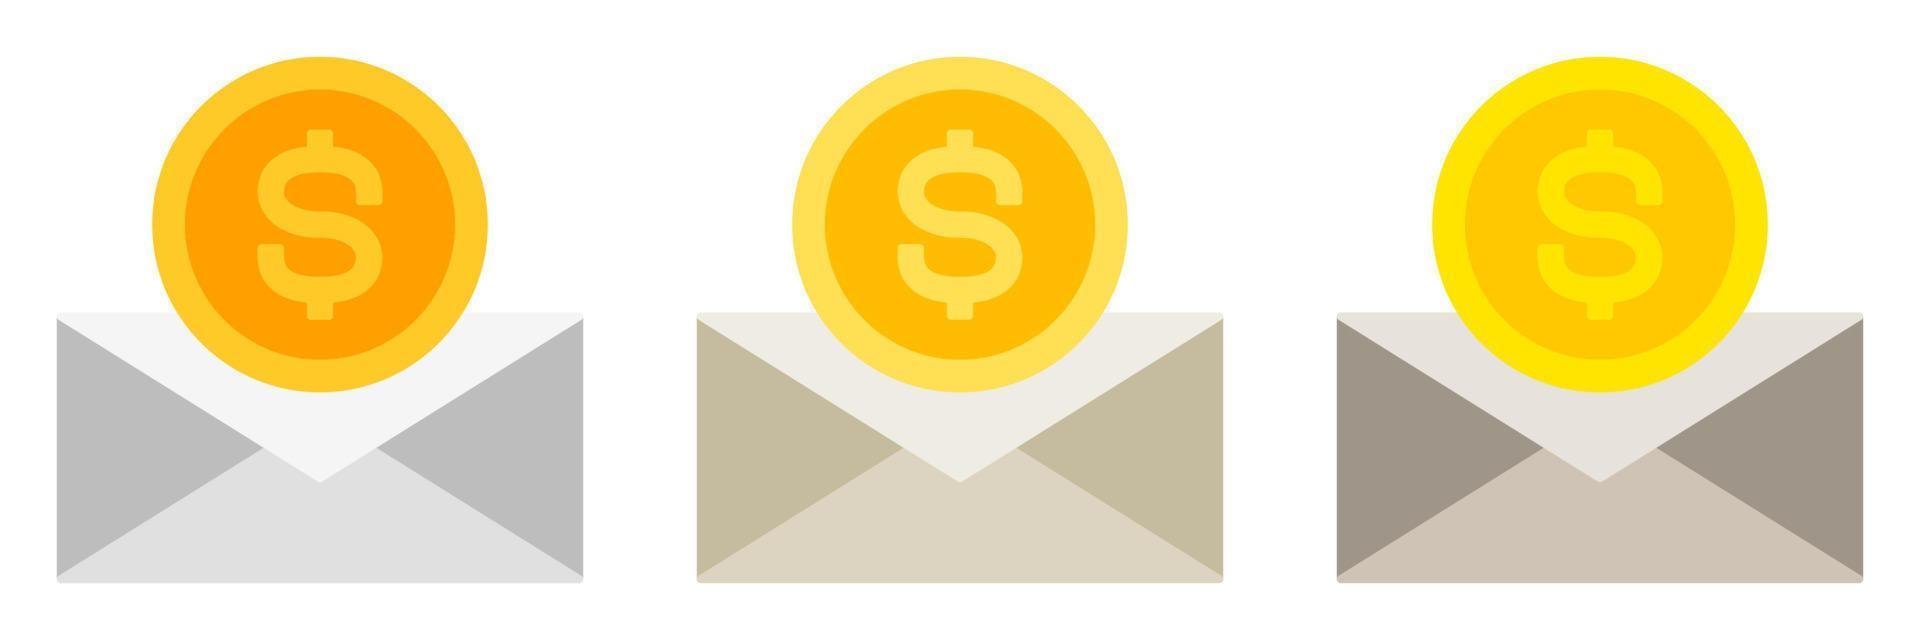 correo financiero en estilo plano aislado vector